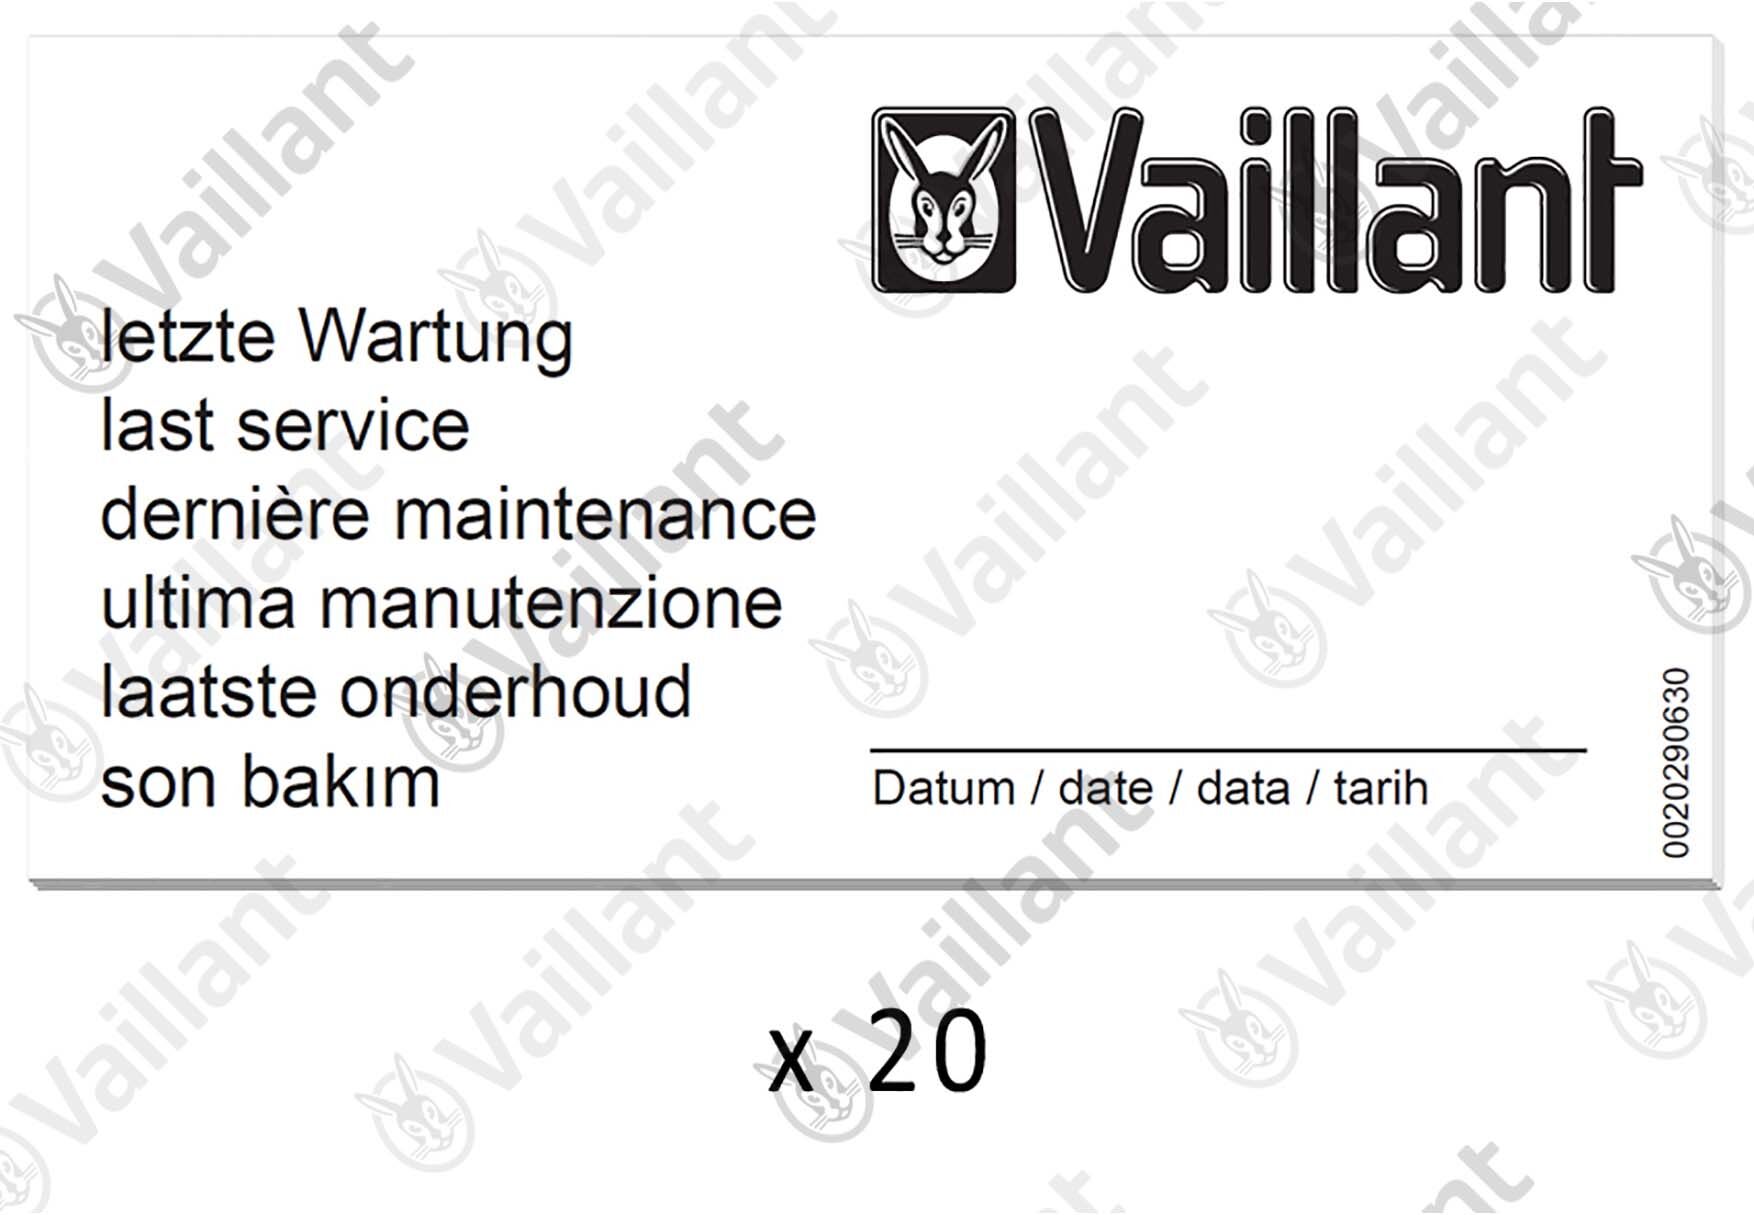 Vaillant Wartungsaufkleber, (x20) 0010027639 Vaillant-Nr. 0010027639